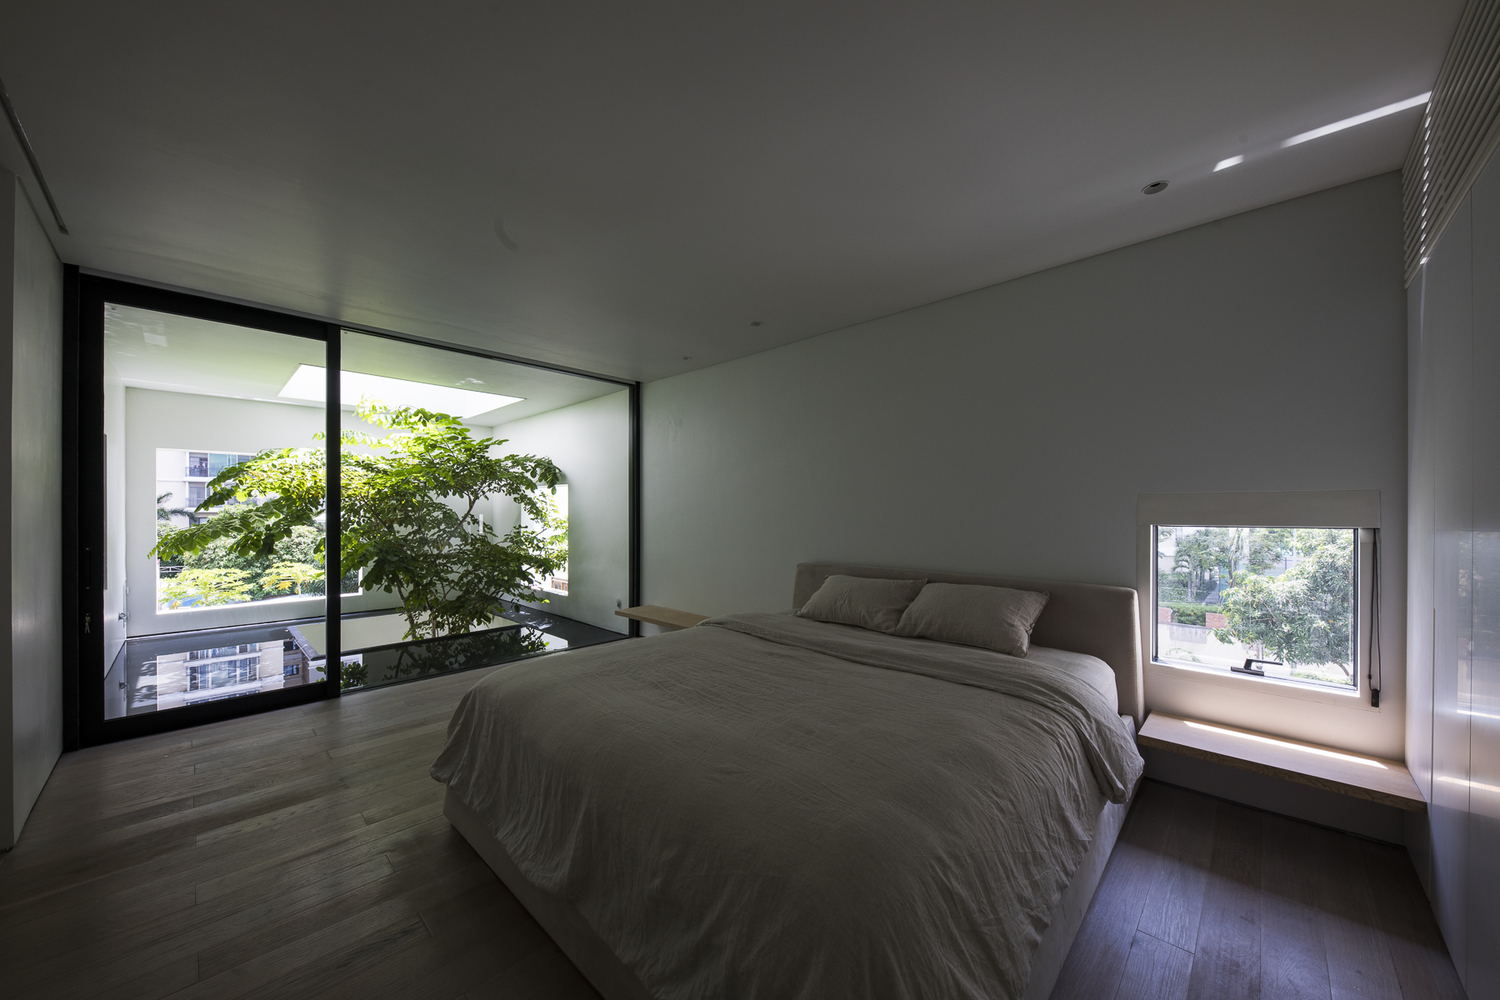 Phòng ngủ được thiết kế với nội thất tối giản và tràn ngập sắc xanh mát mắt.